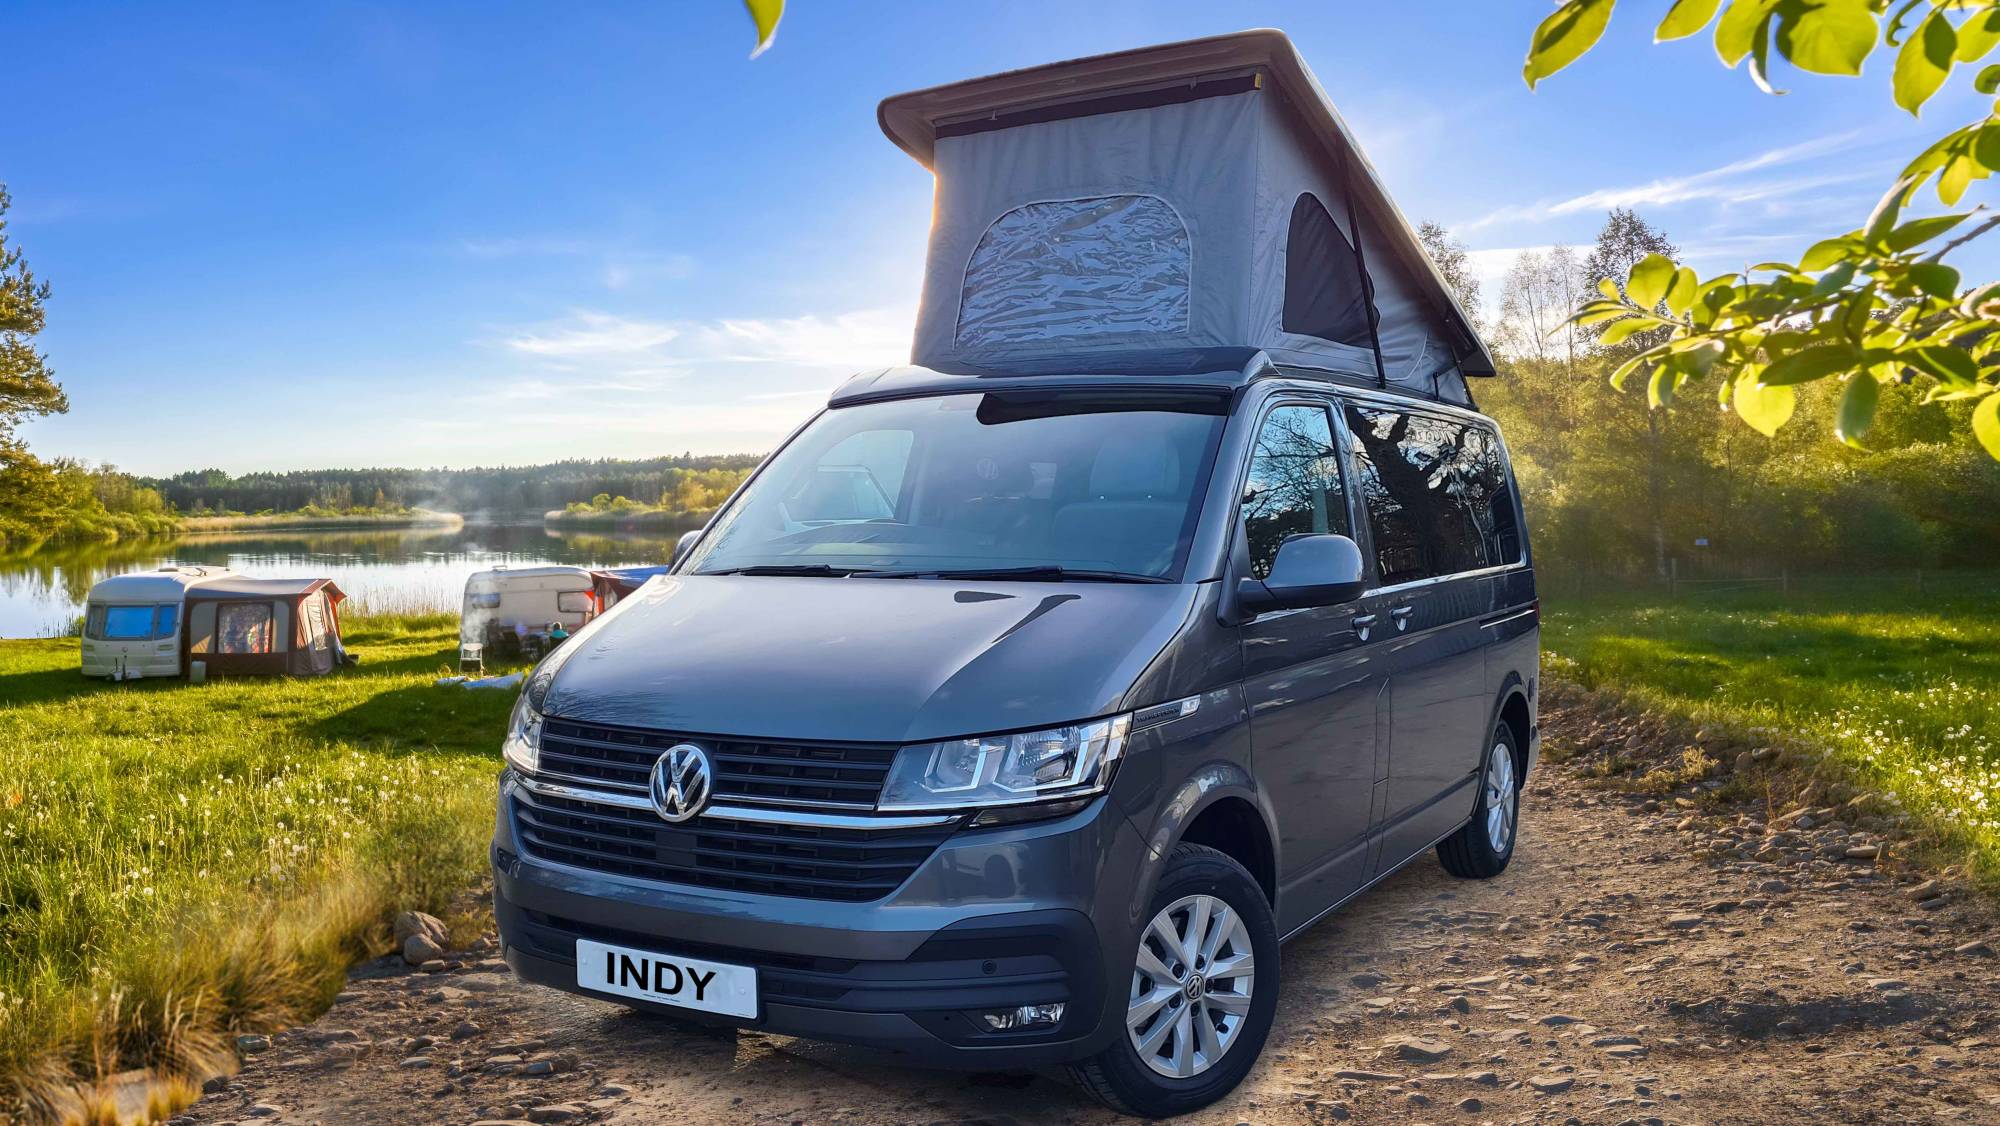 Volkswagen Campervan For Hire | Euro Self Drive